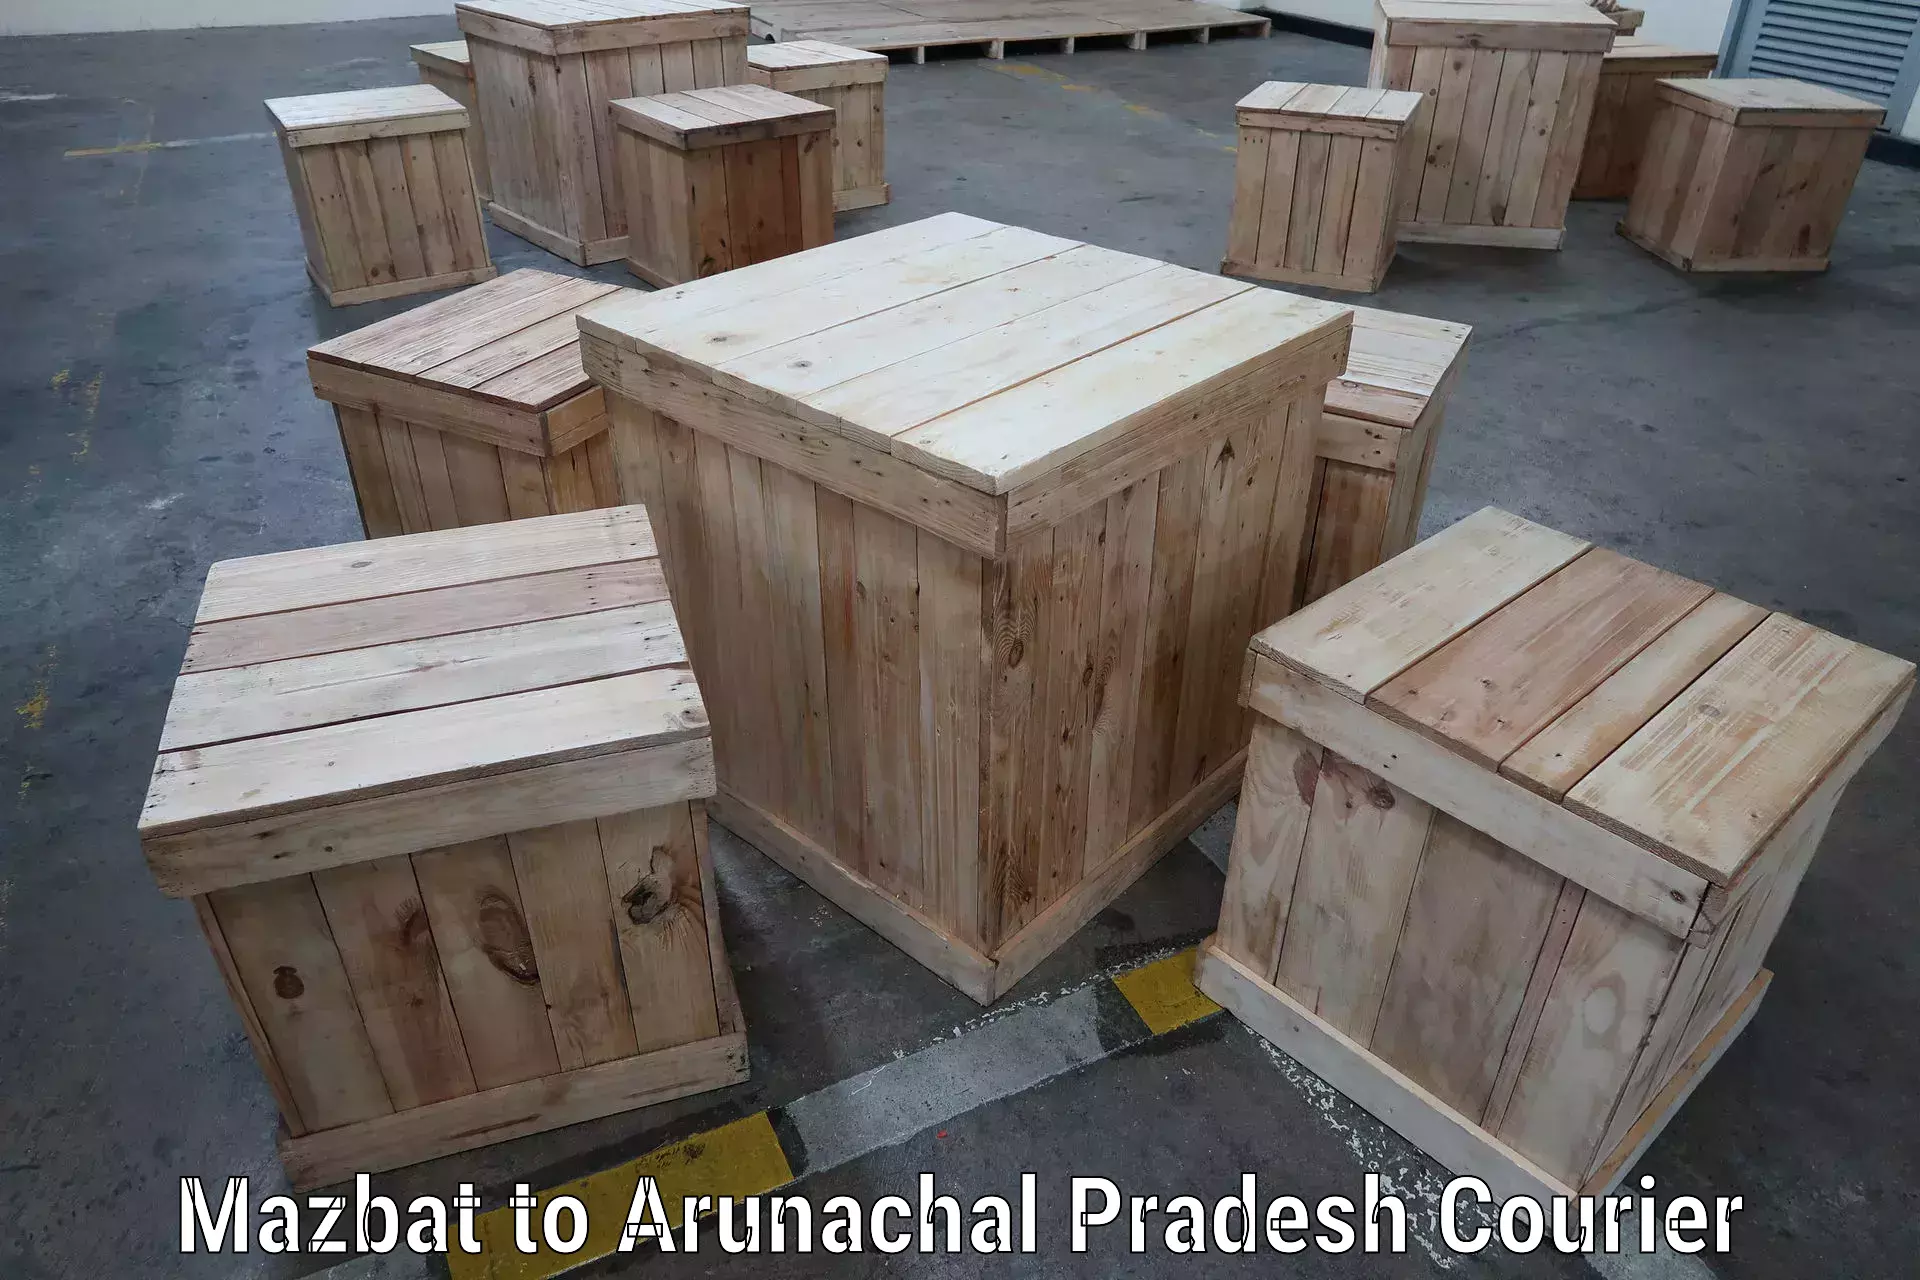 Residential courier service Mazbat to Arunachal Pradesh